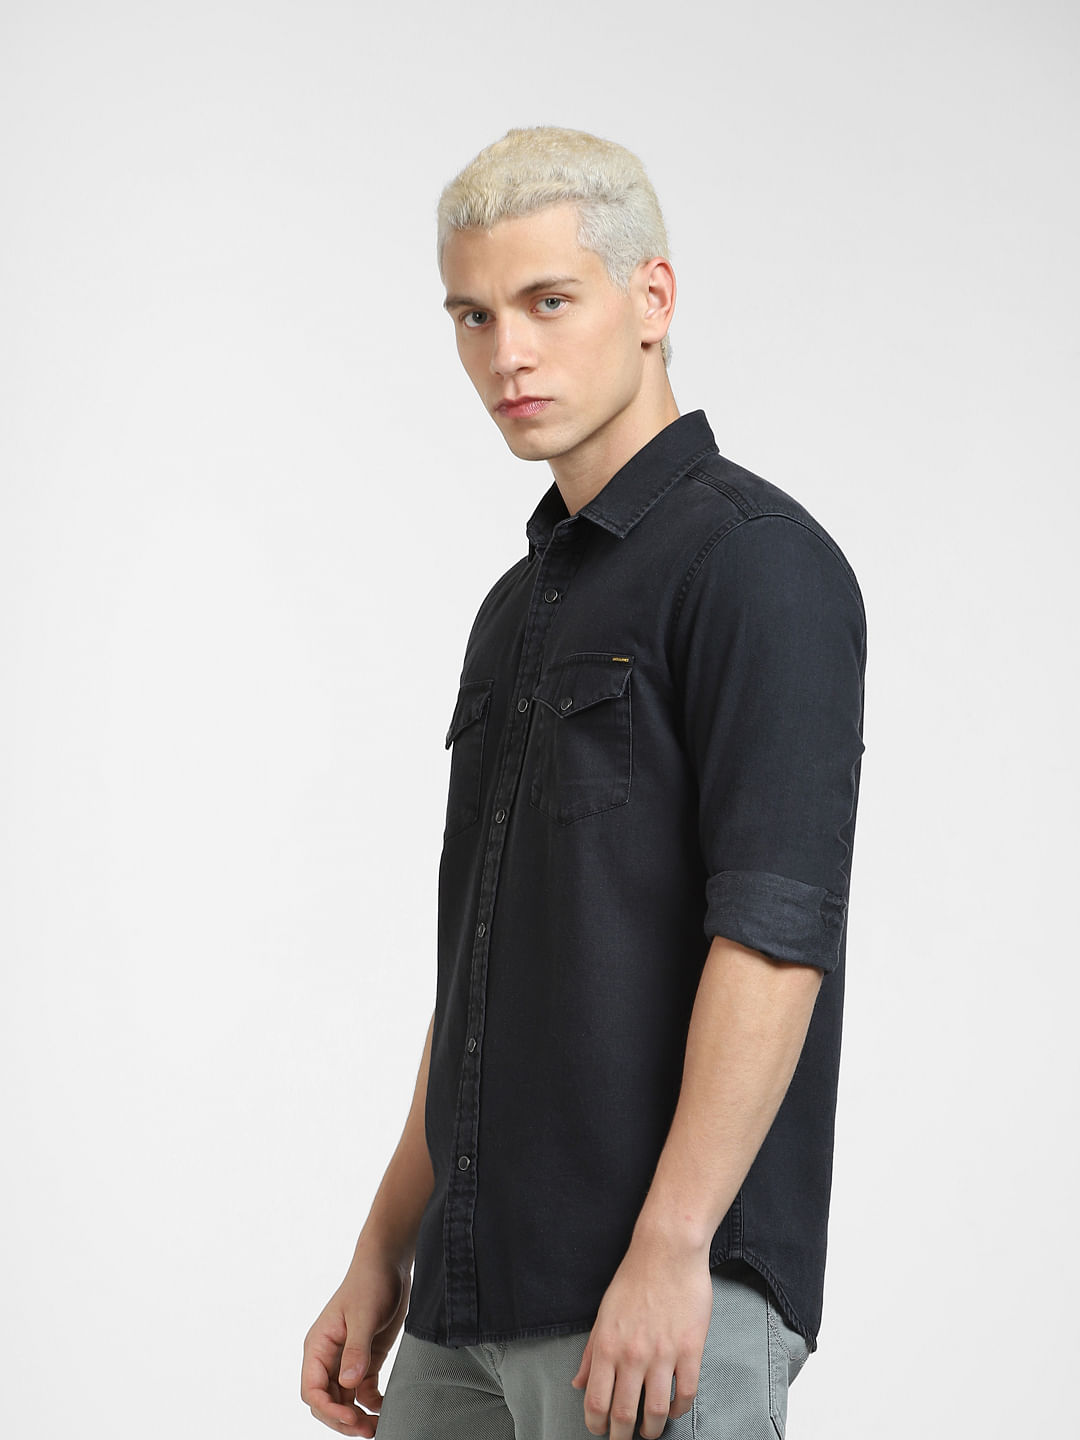 MEN, Top Wear, Casual Shirts | XXLLENT Black Denim Shirt